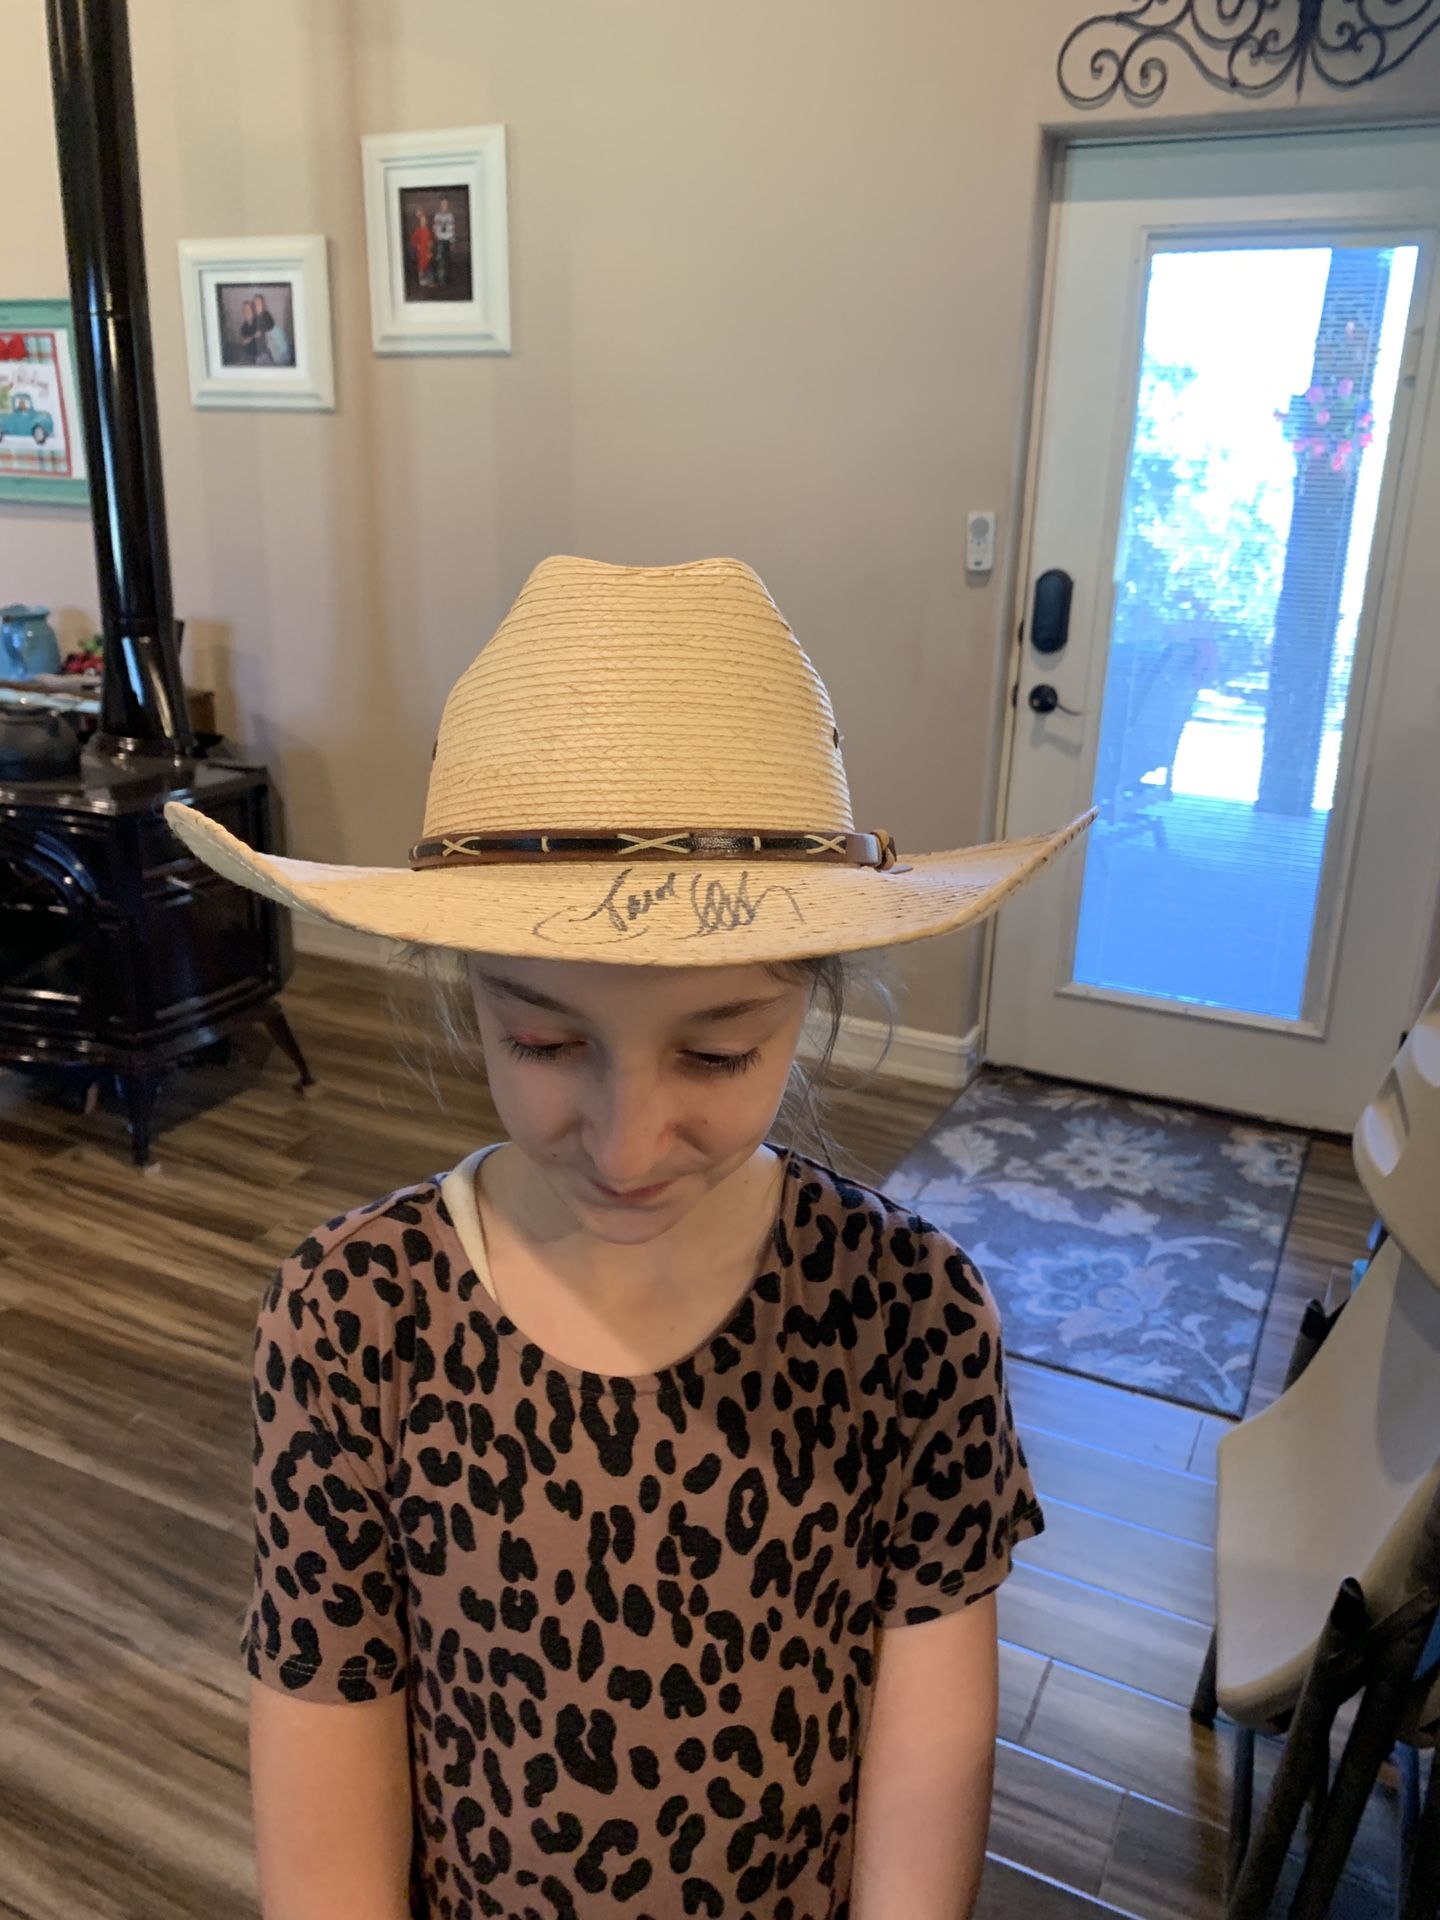 Jason Aldean Autographed Straw Hat 